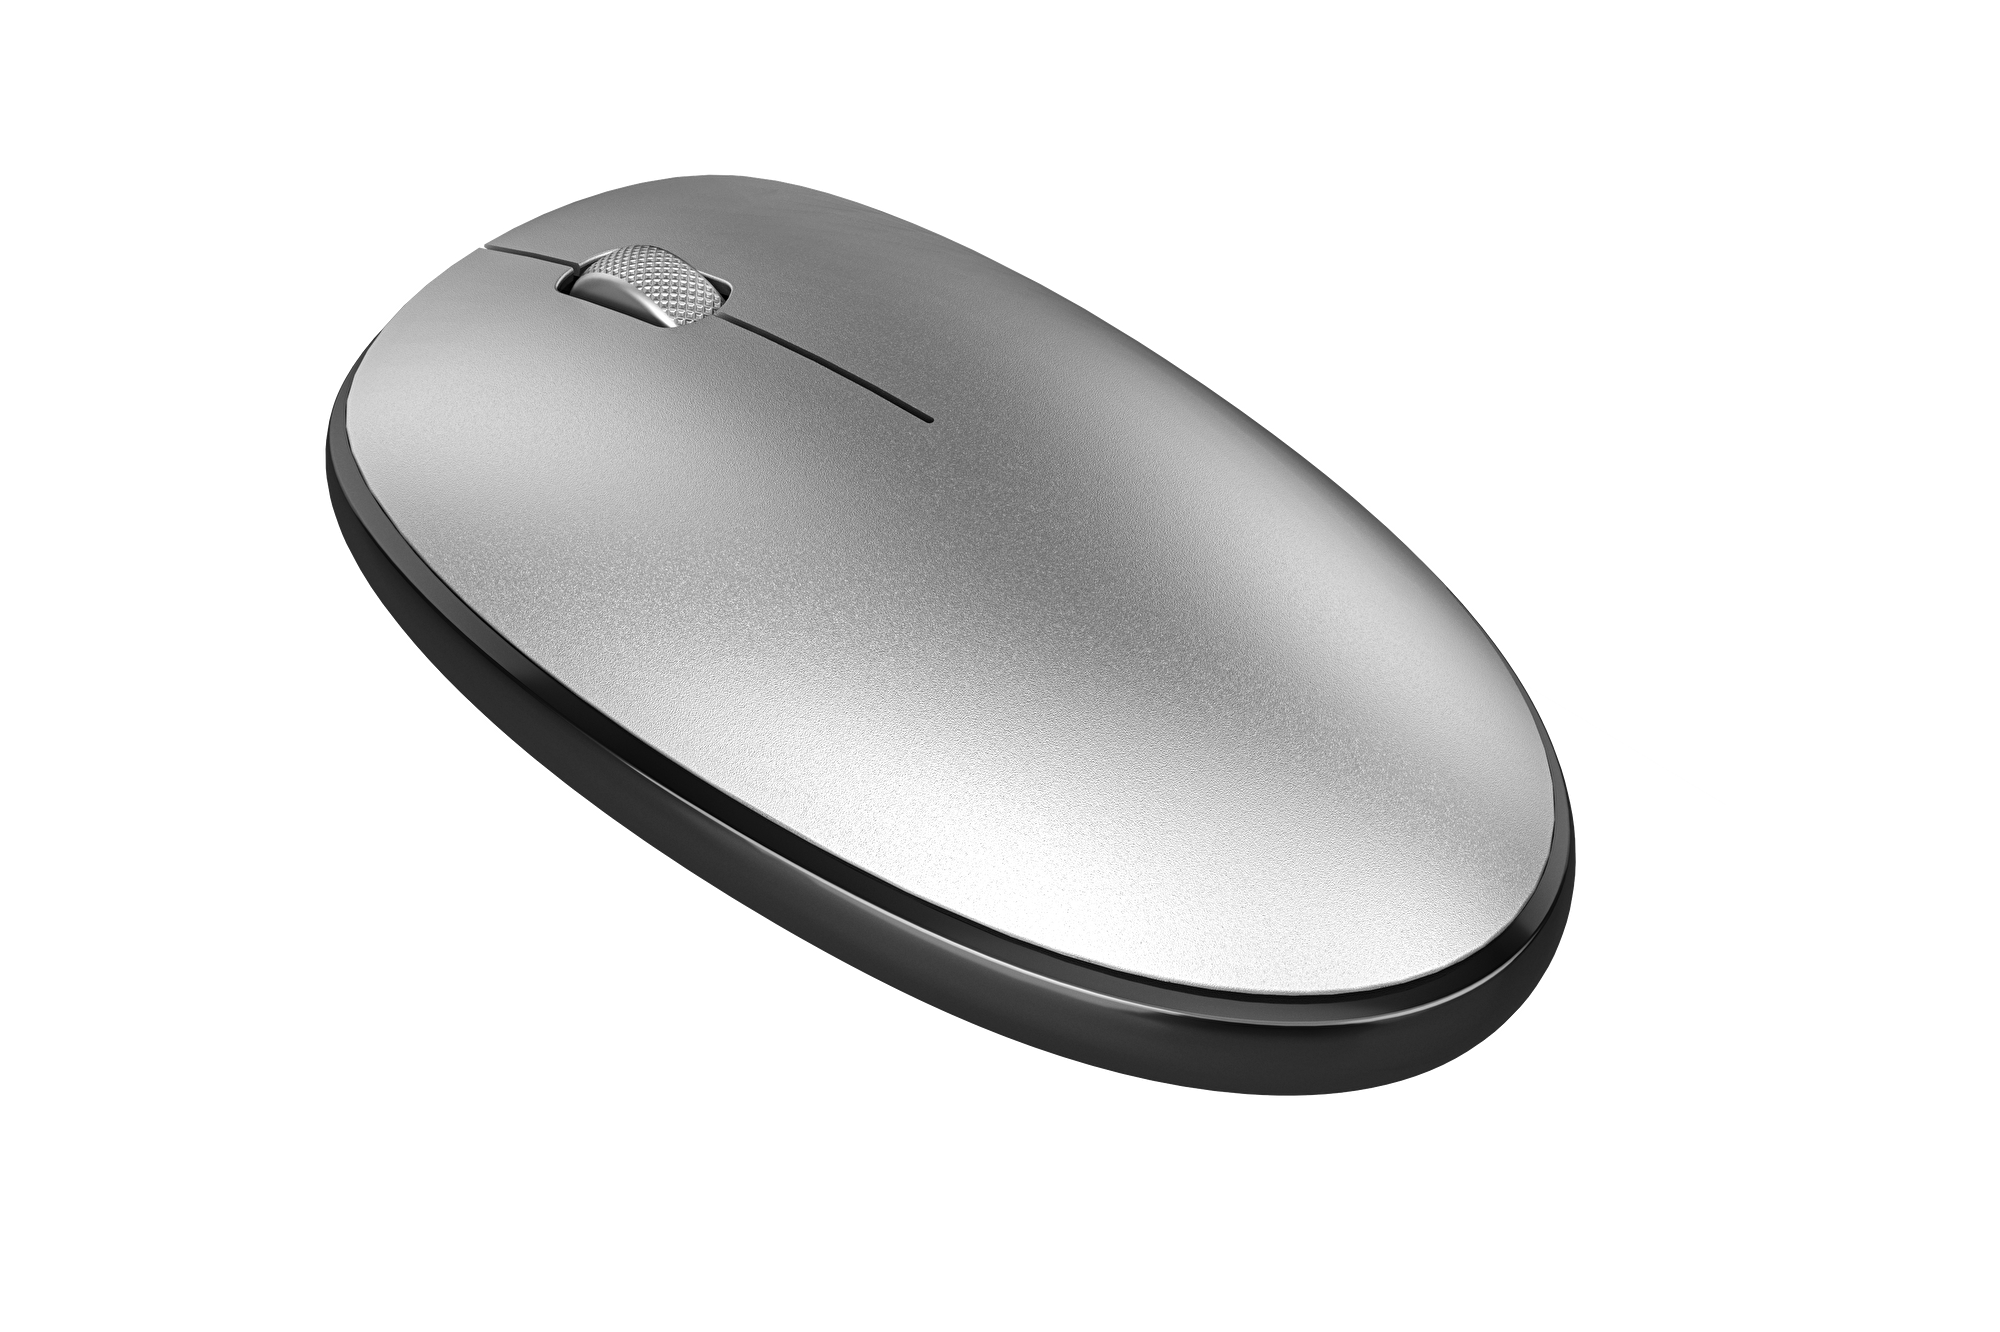 Pusat Business Pro Kablosuz Mouse - Gümüş 23025